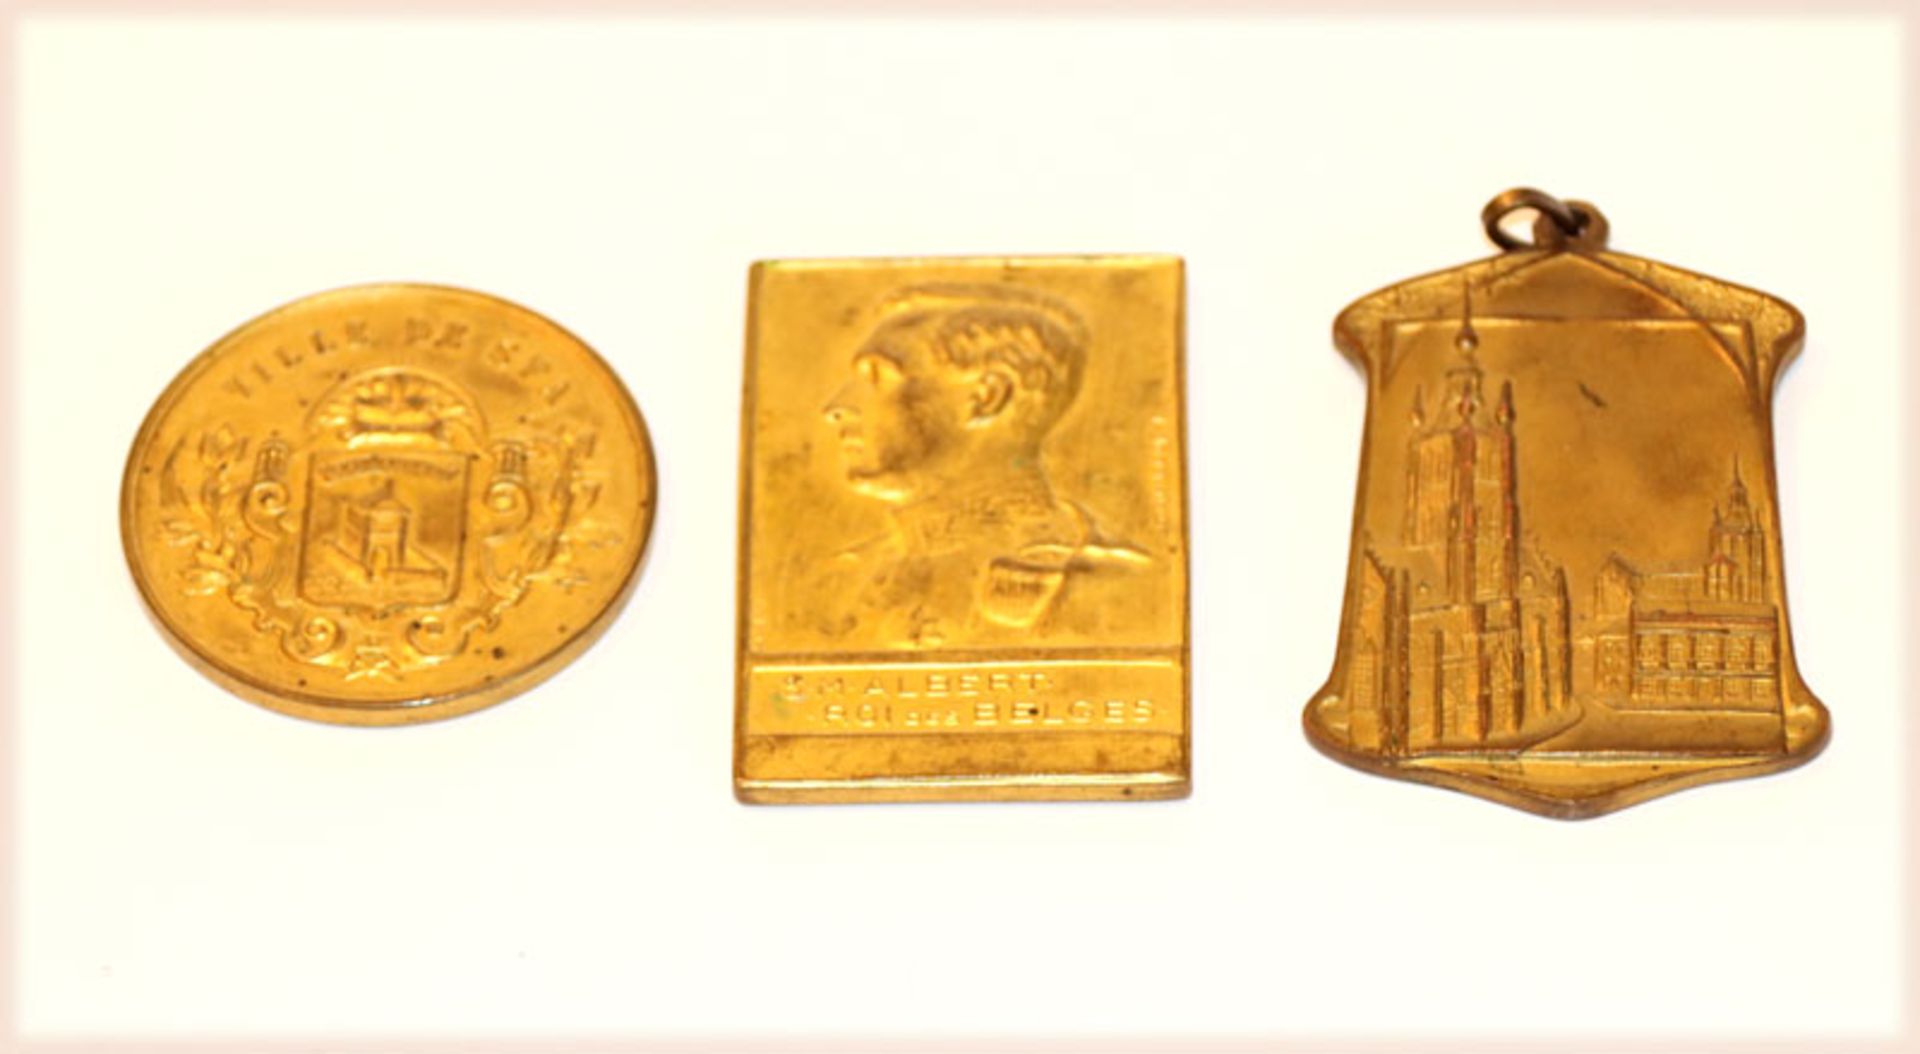 Konvolut von 3 belgischen Reitermedaillen, Liege 1934, 1. Preis, Spa 1935, 1. Preis und Ville de